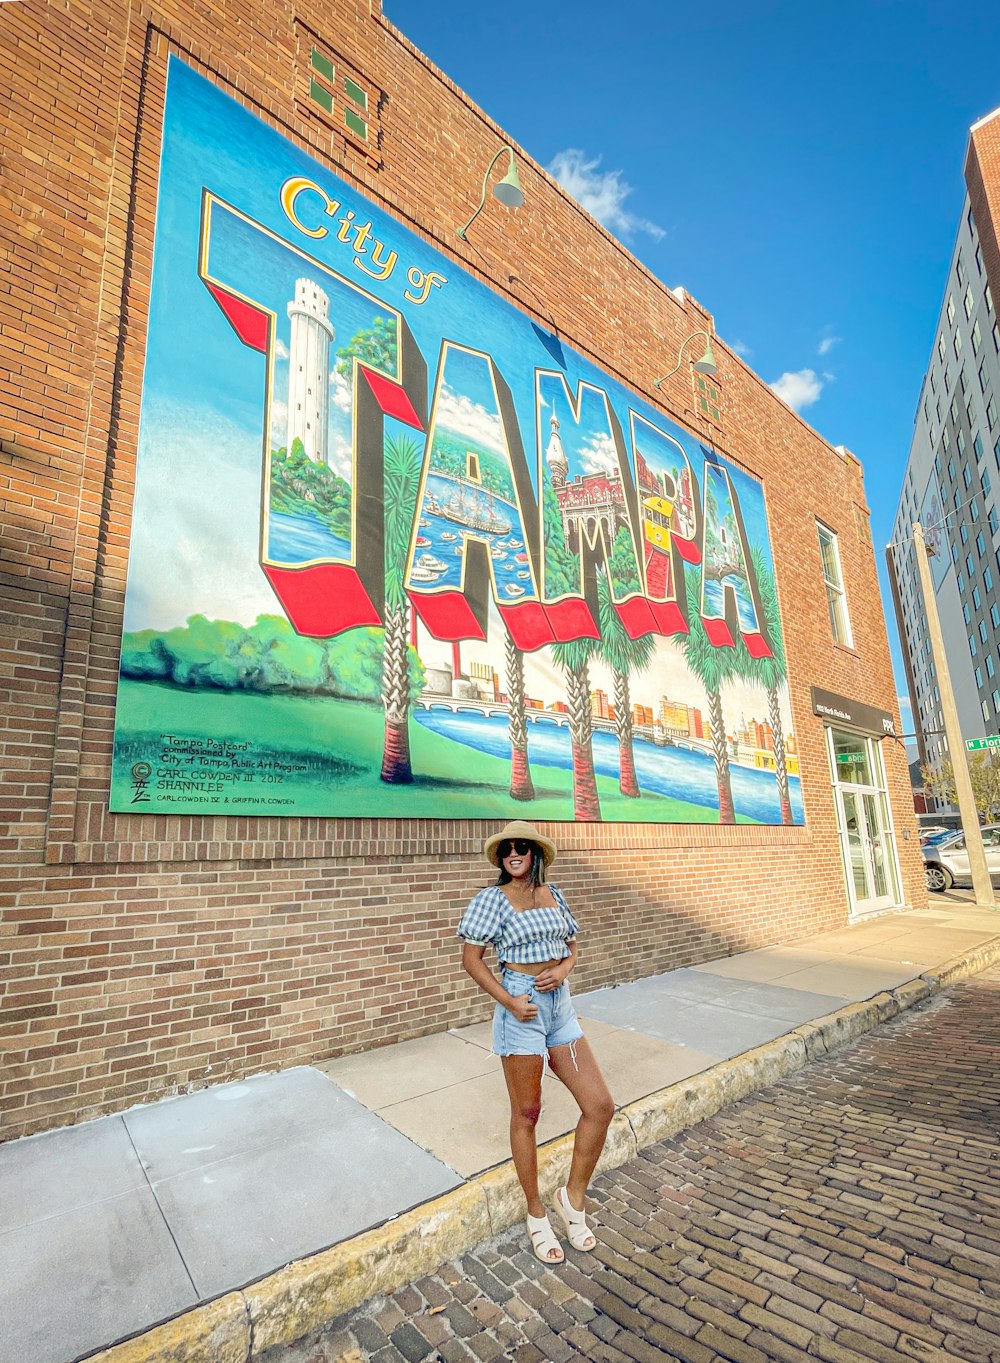 Eine Frau steht vor einem Gebäude mit einem Wandgemälde darauf